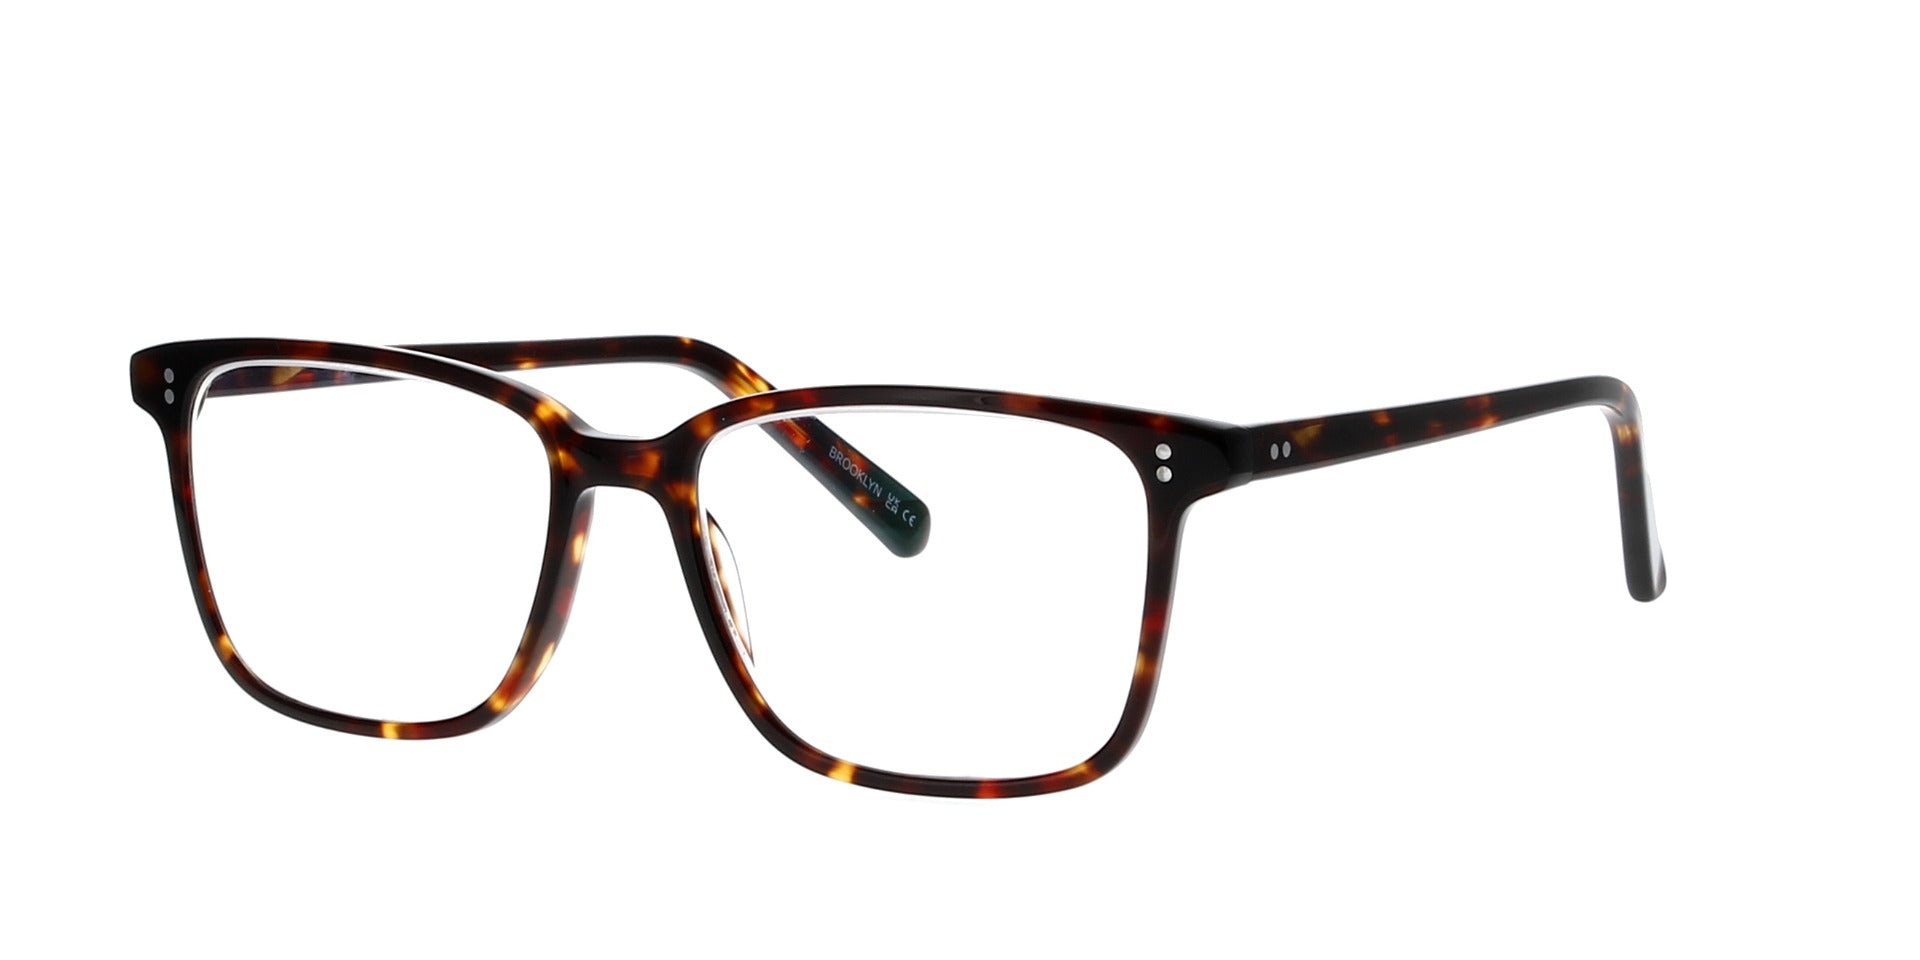 Original Square Tortoise Glasses Frame Men Shades Classic BELIZEI